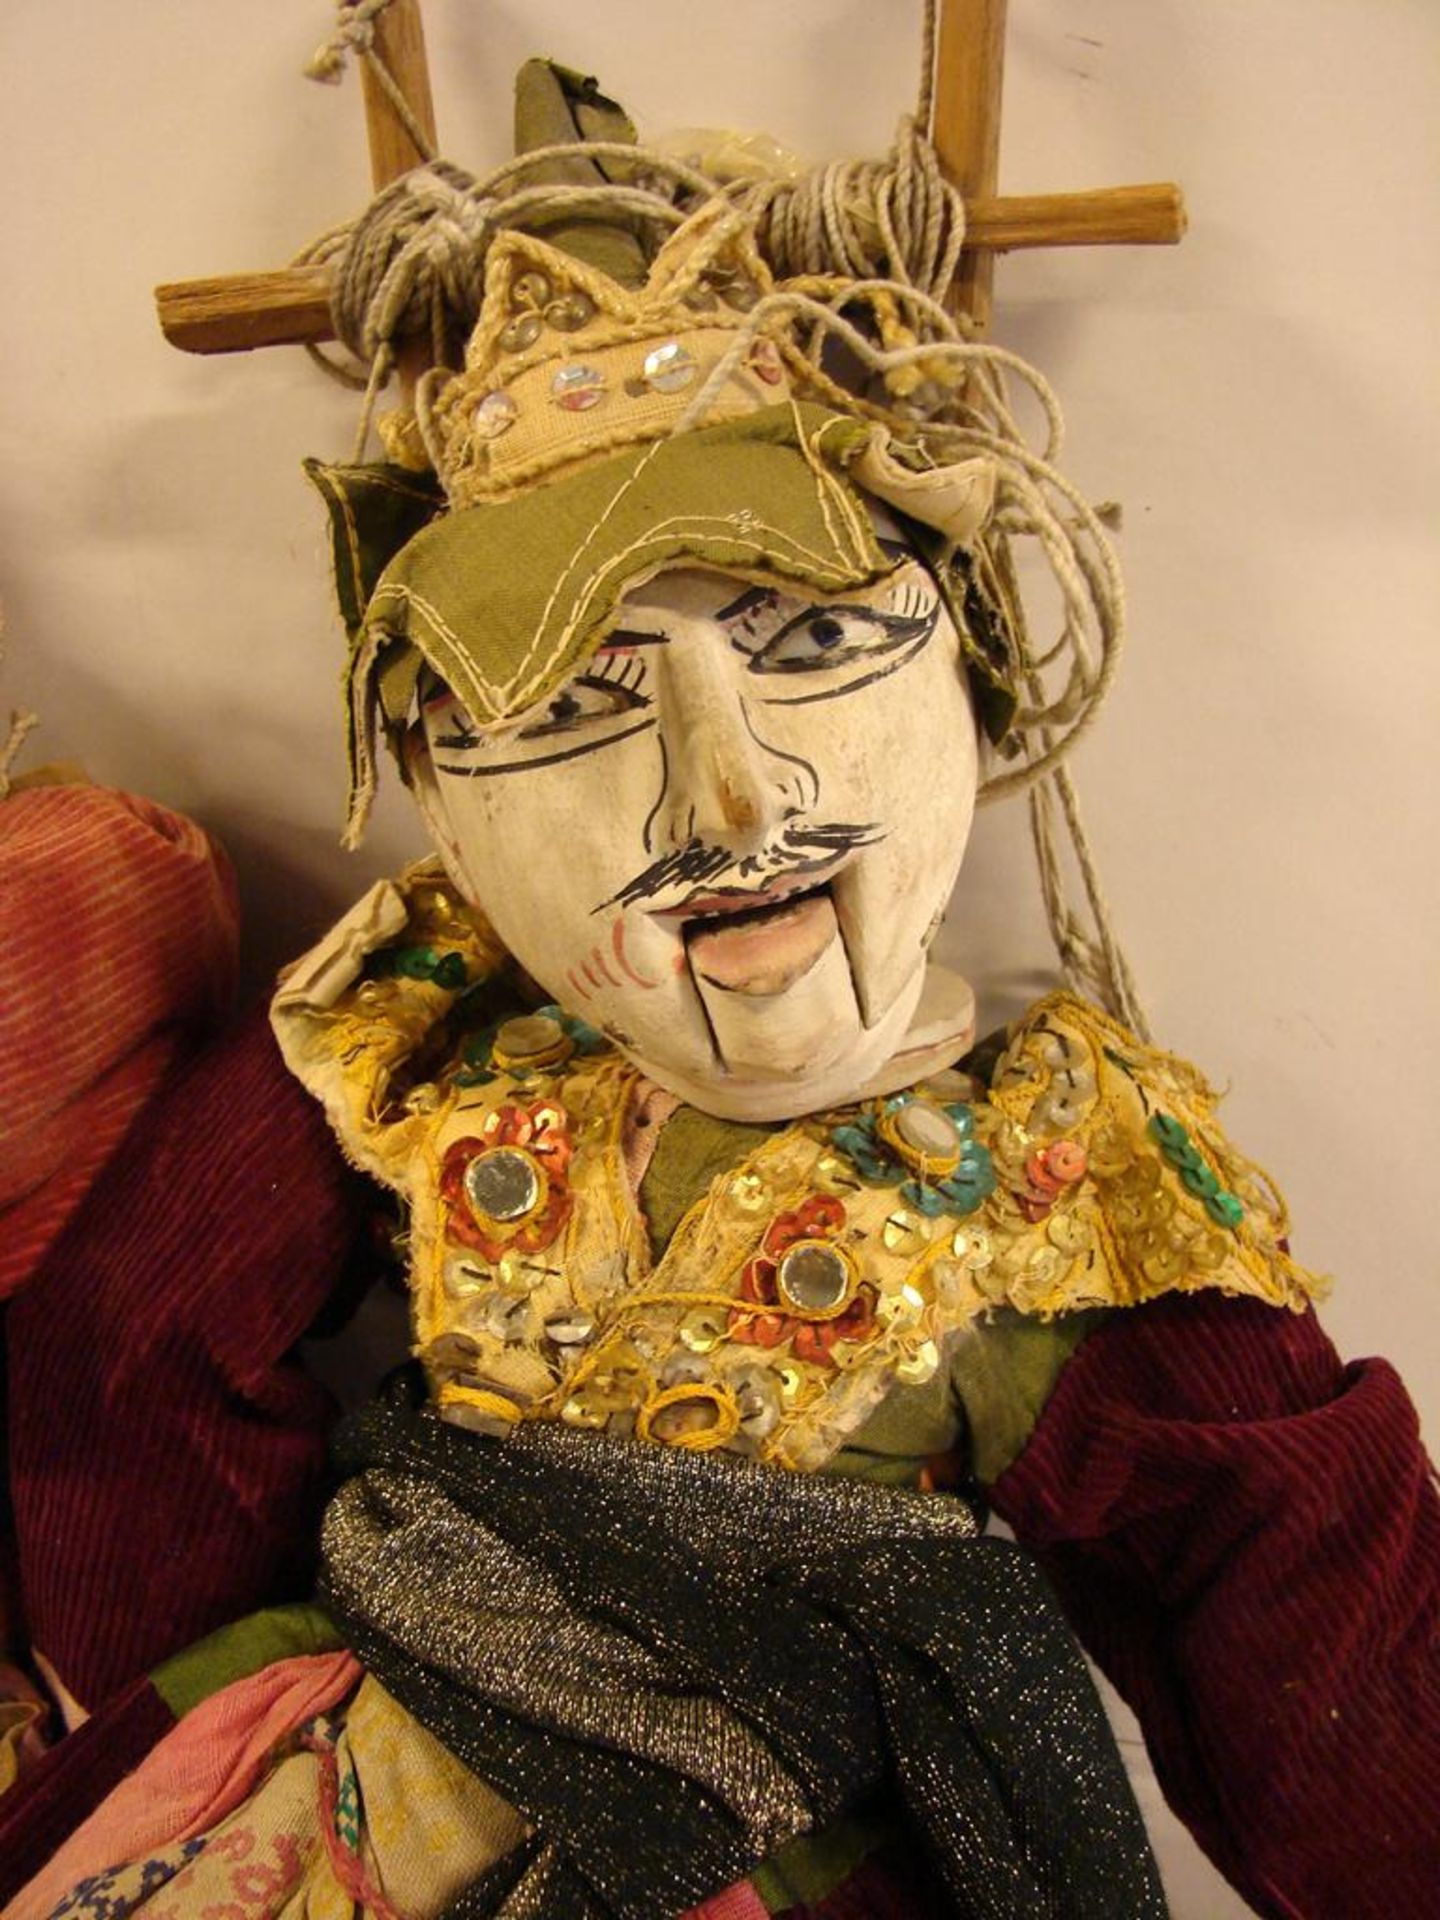 2 Holzpuppen, Marionetten mit beweglichen Fingern, Armen, Beinen, Kopf, Asien,original - Image 3 of 3